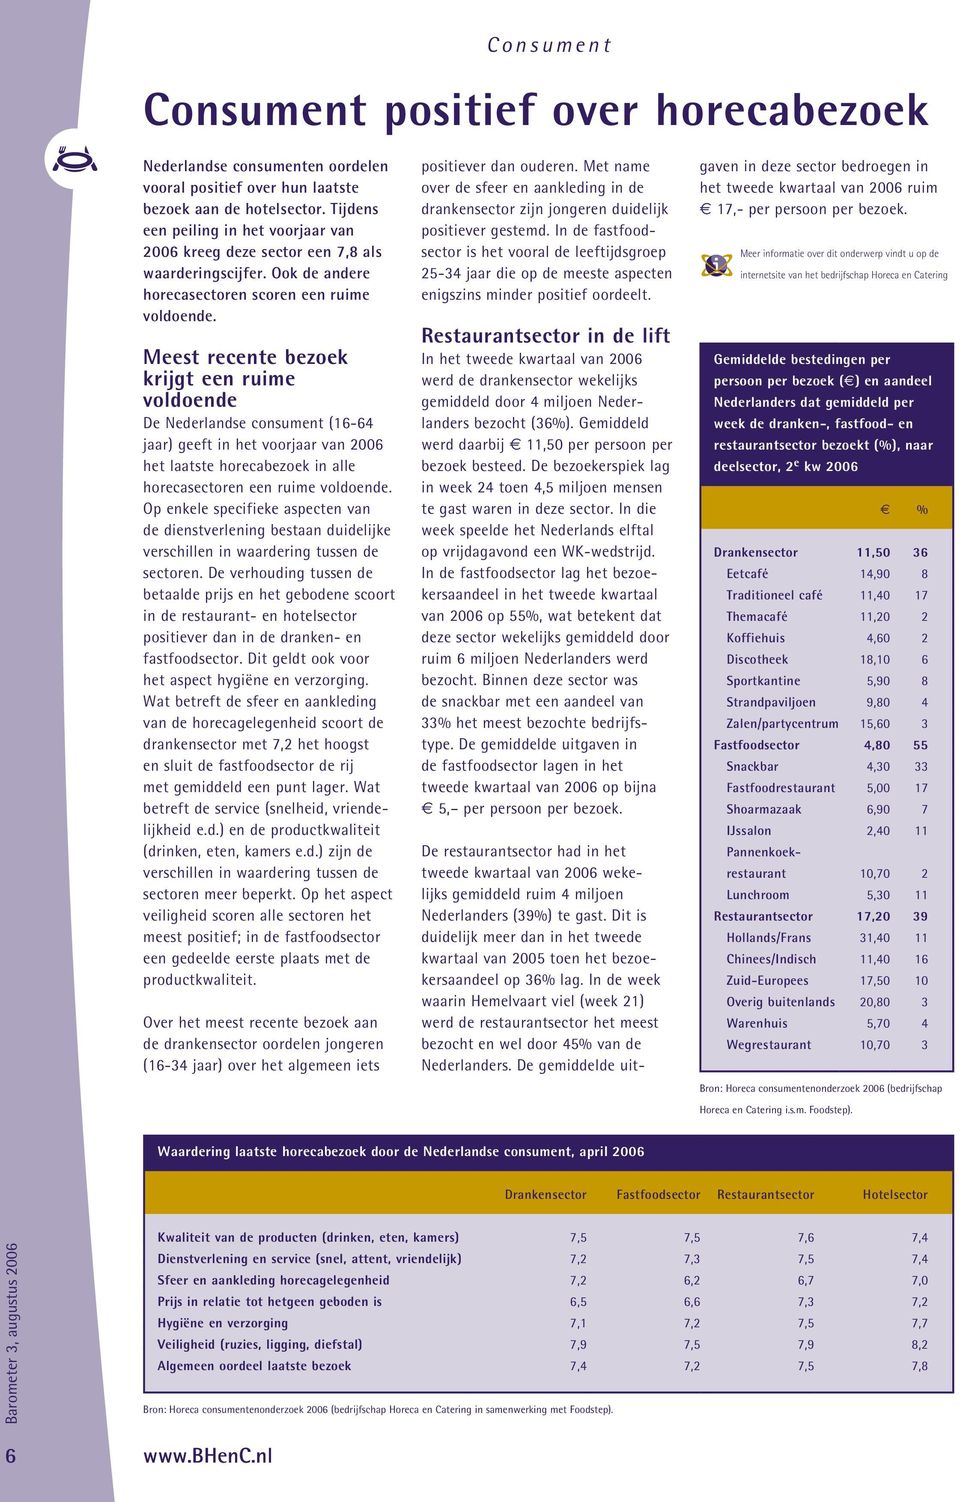 Meest recente bezoek krijgt een ruime voldoende De Nederlandse consument (16-64 jaar) geeft in het voorjaar van 2006 het laatste horecabezoek in alle horecasectoren een ruime voldoende.